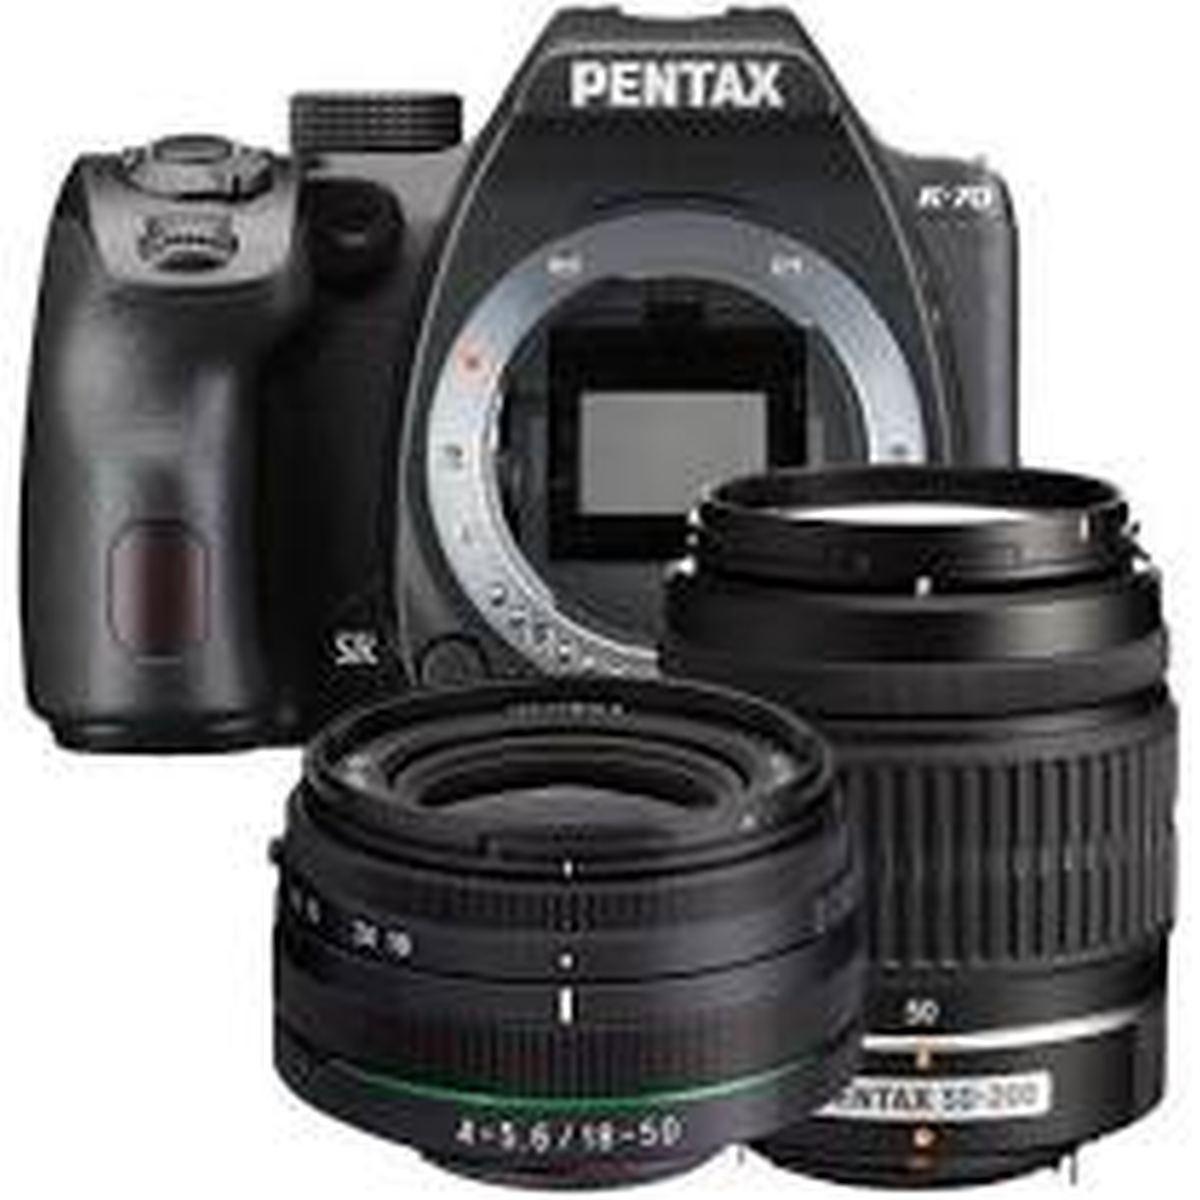 Pentax K-70 Black Kit 18-50mm + 50-200mm - Fotocamera Reflex Aps-c - Garanzia Fowa 4 anni